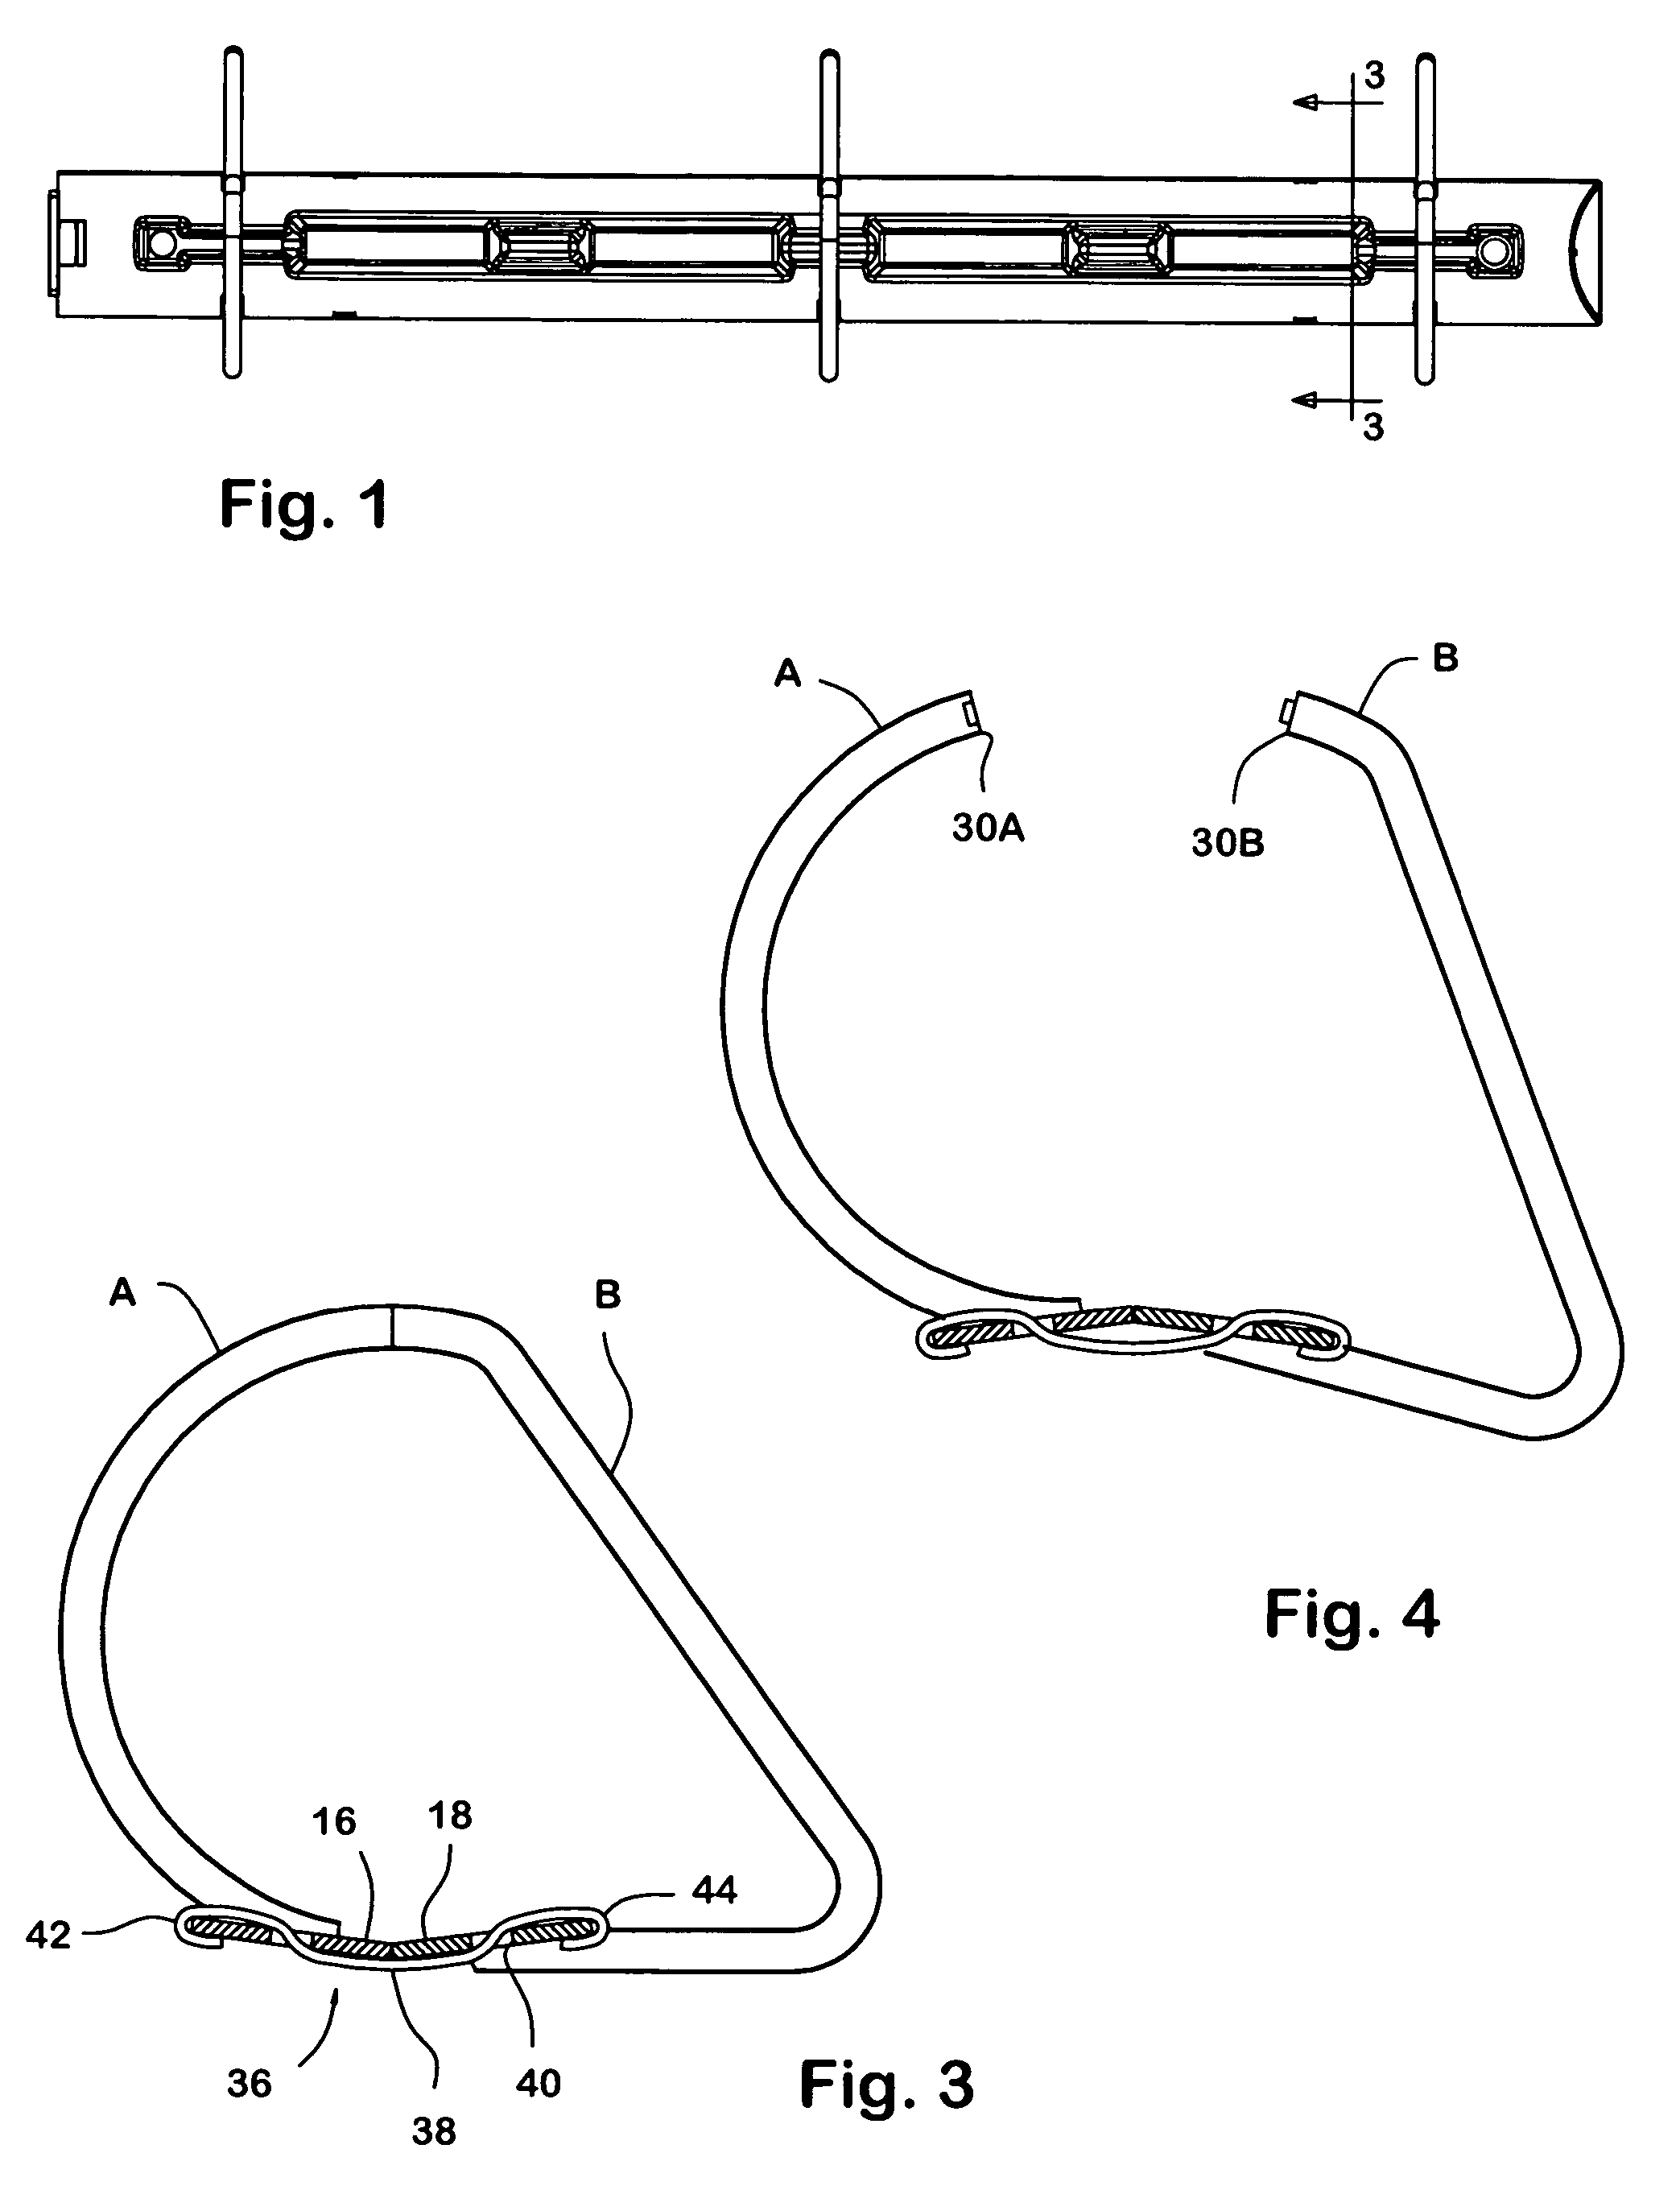 Easy to open ring binder mechanism